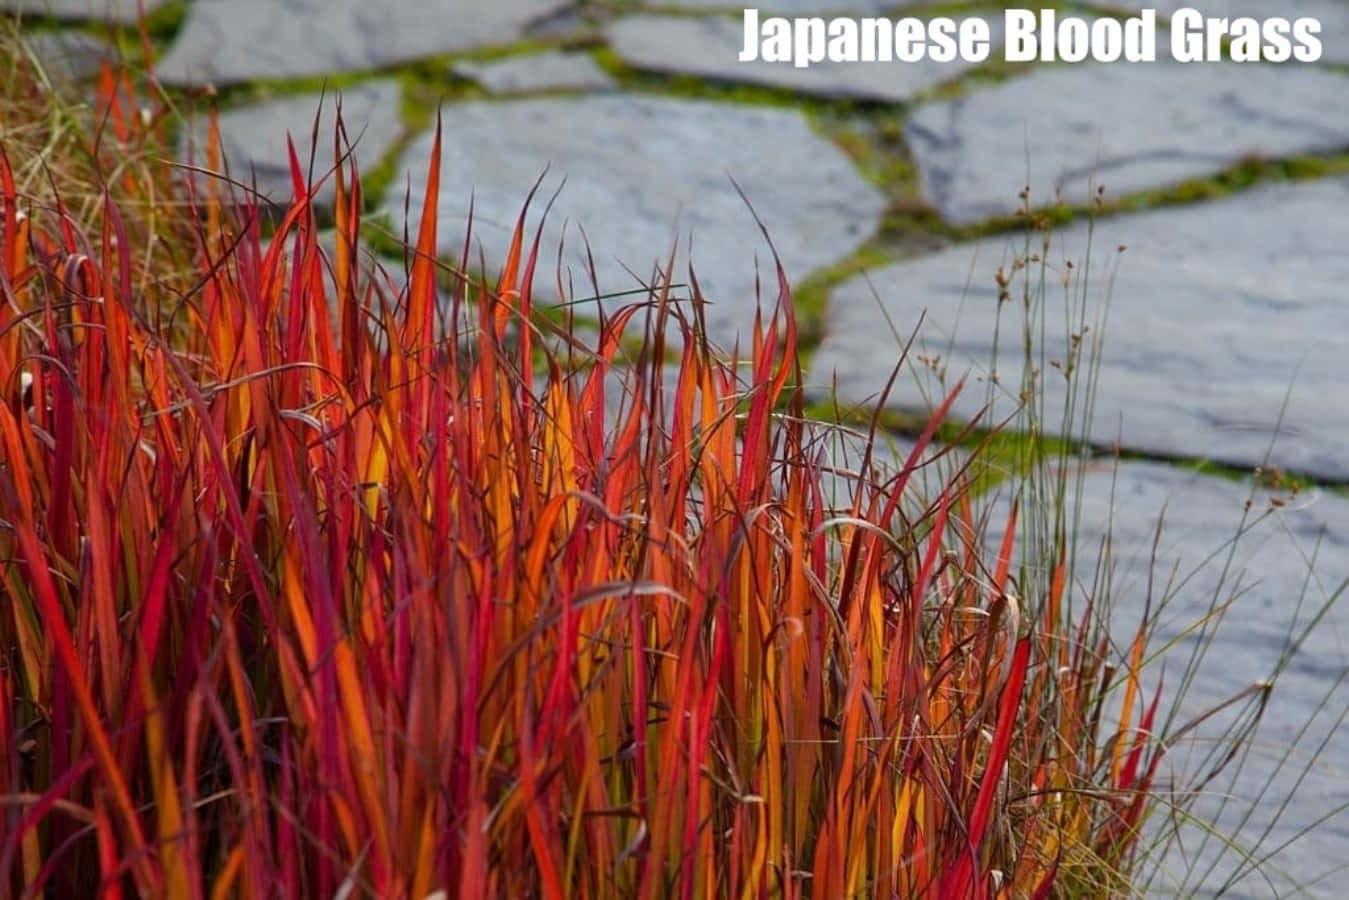 Identificaçãoda Grama Da Planta De Sangue Japonesa Fotografia Da Imagem De Papel De Parede.